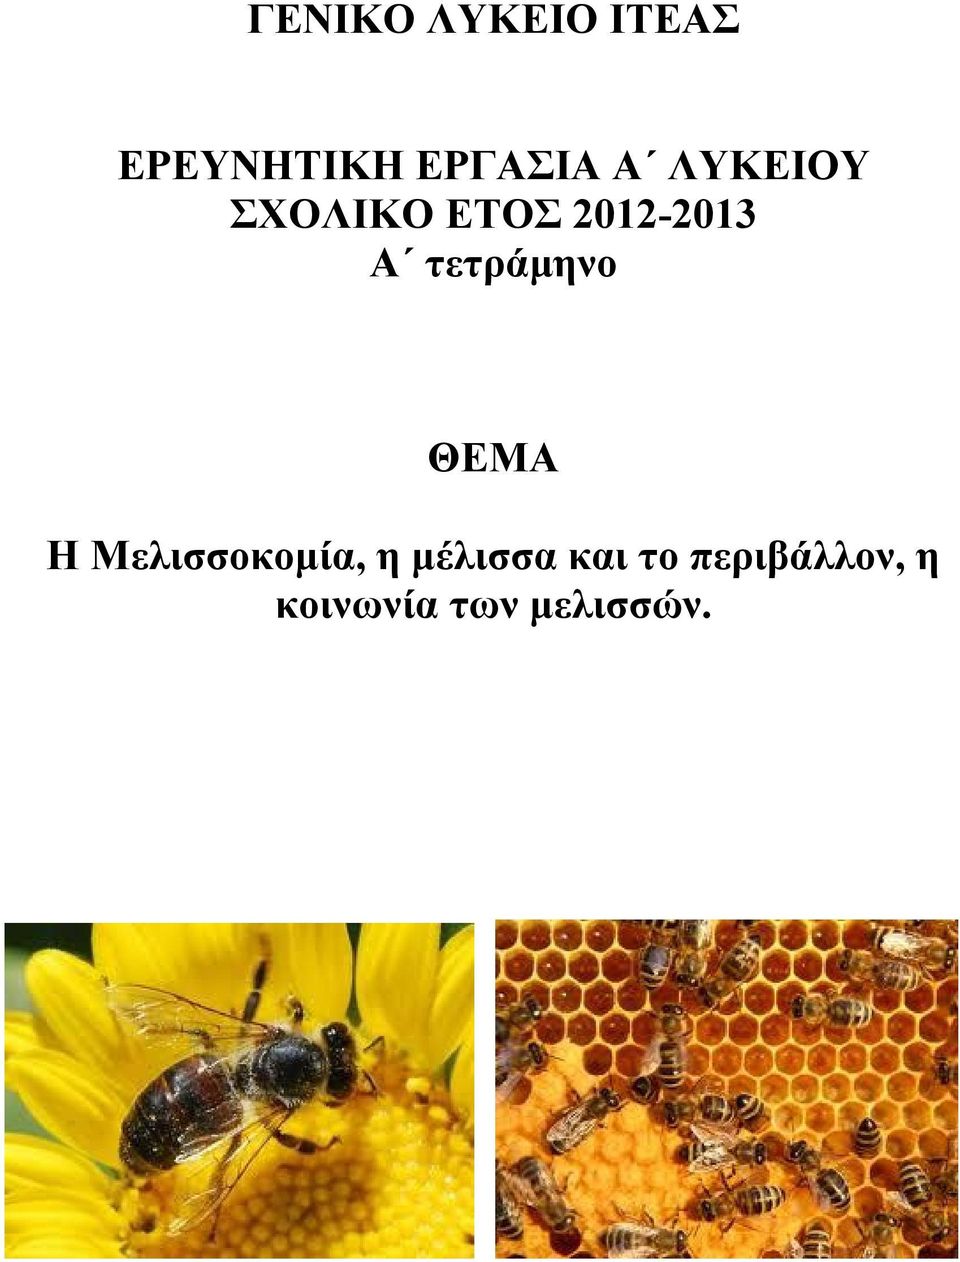 τετράμηνο ΘΕΜΑ Η Μελισσοκομία, η